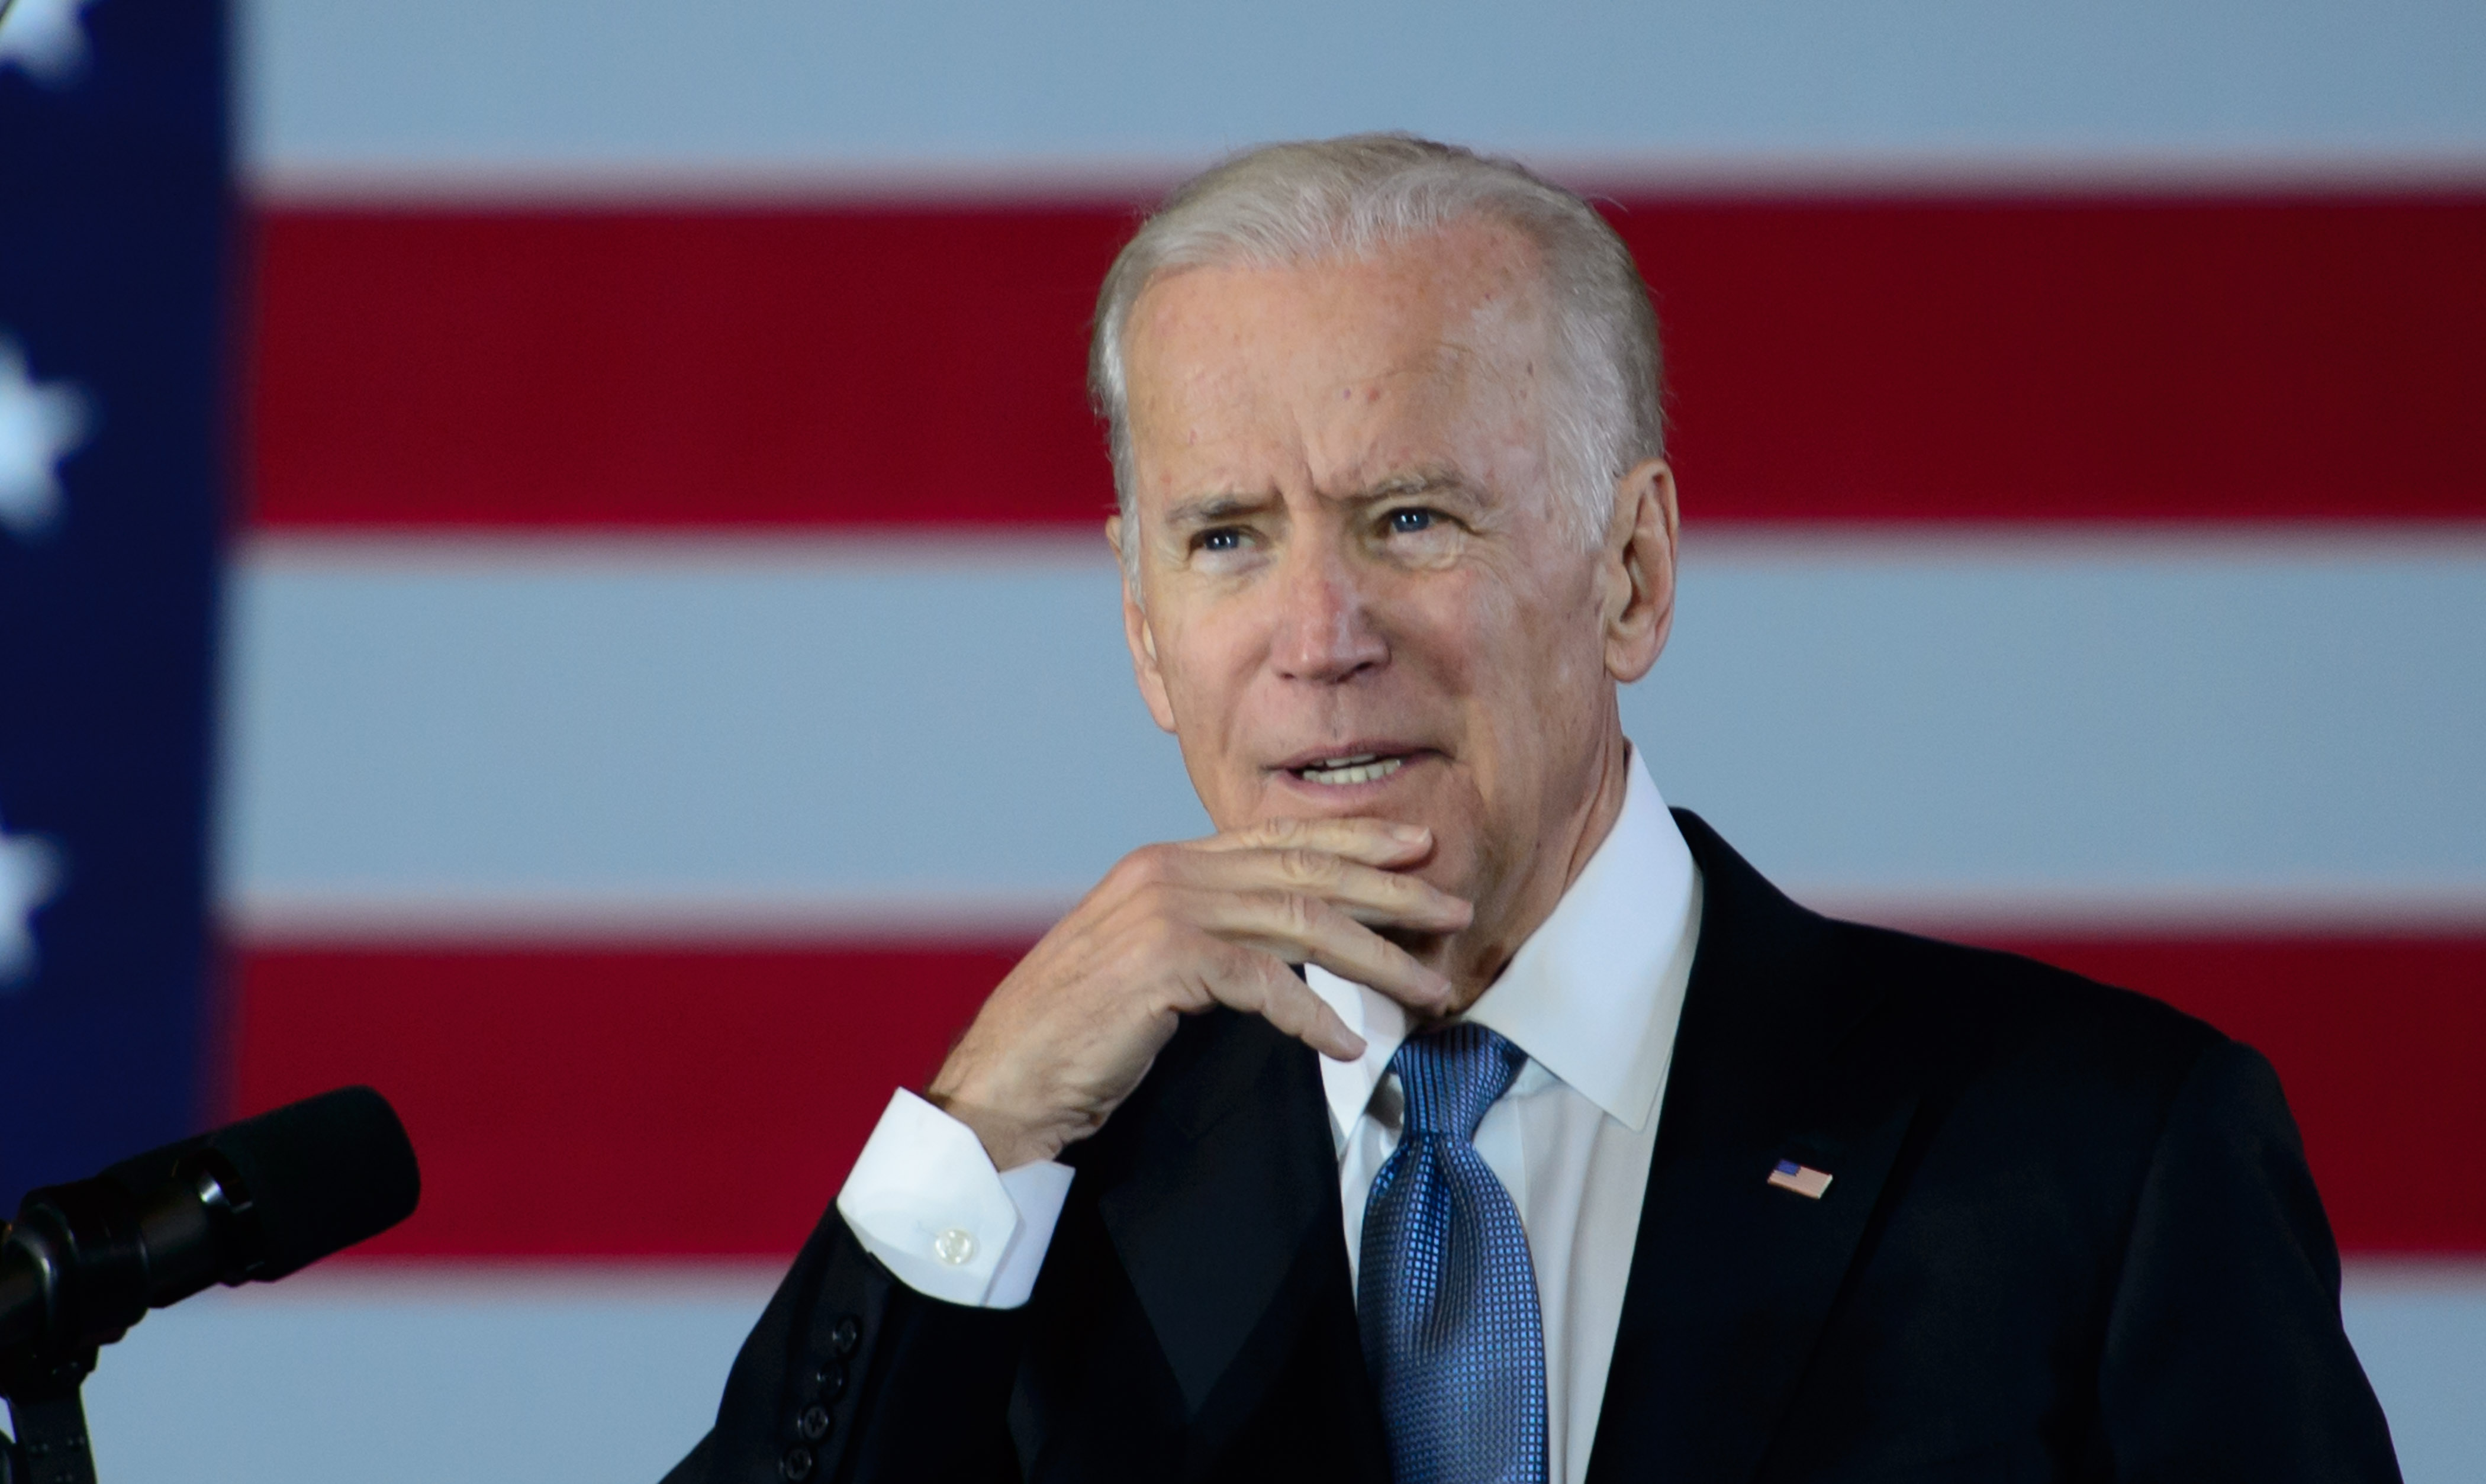 Joe Biden New Campus Sex Assault Guidelines Not An Improvement